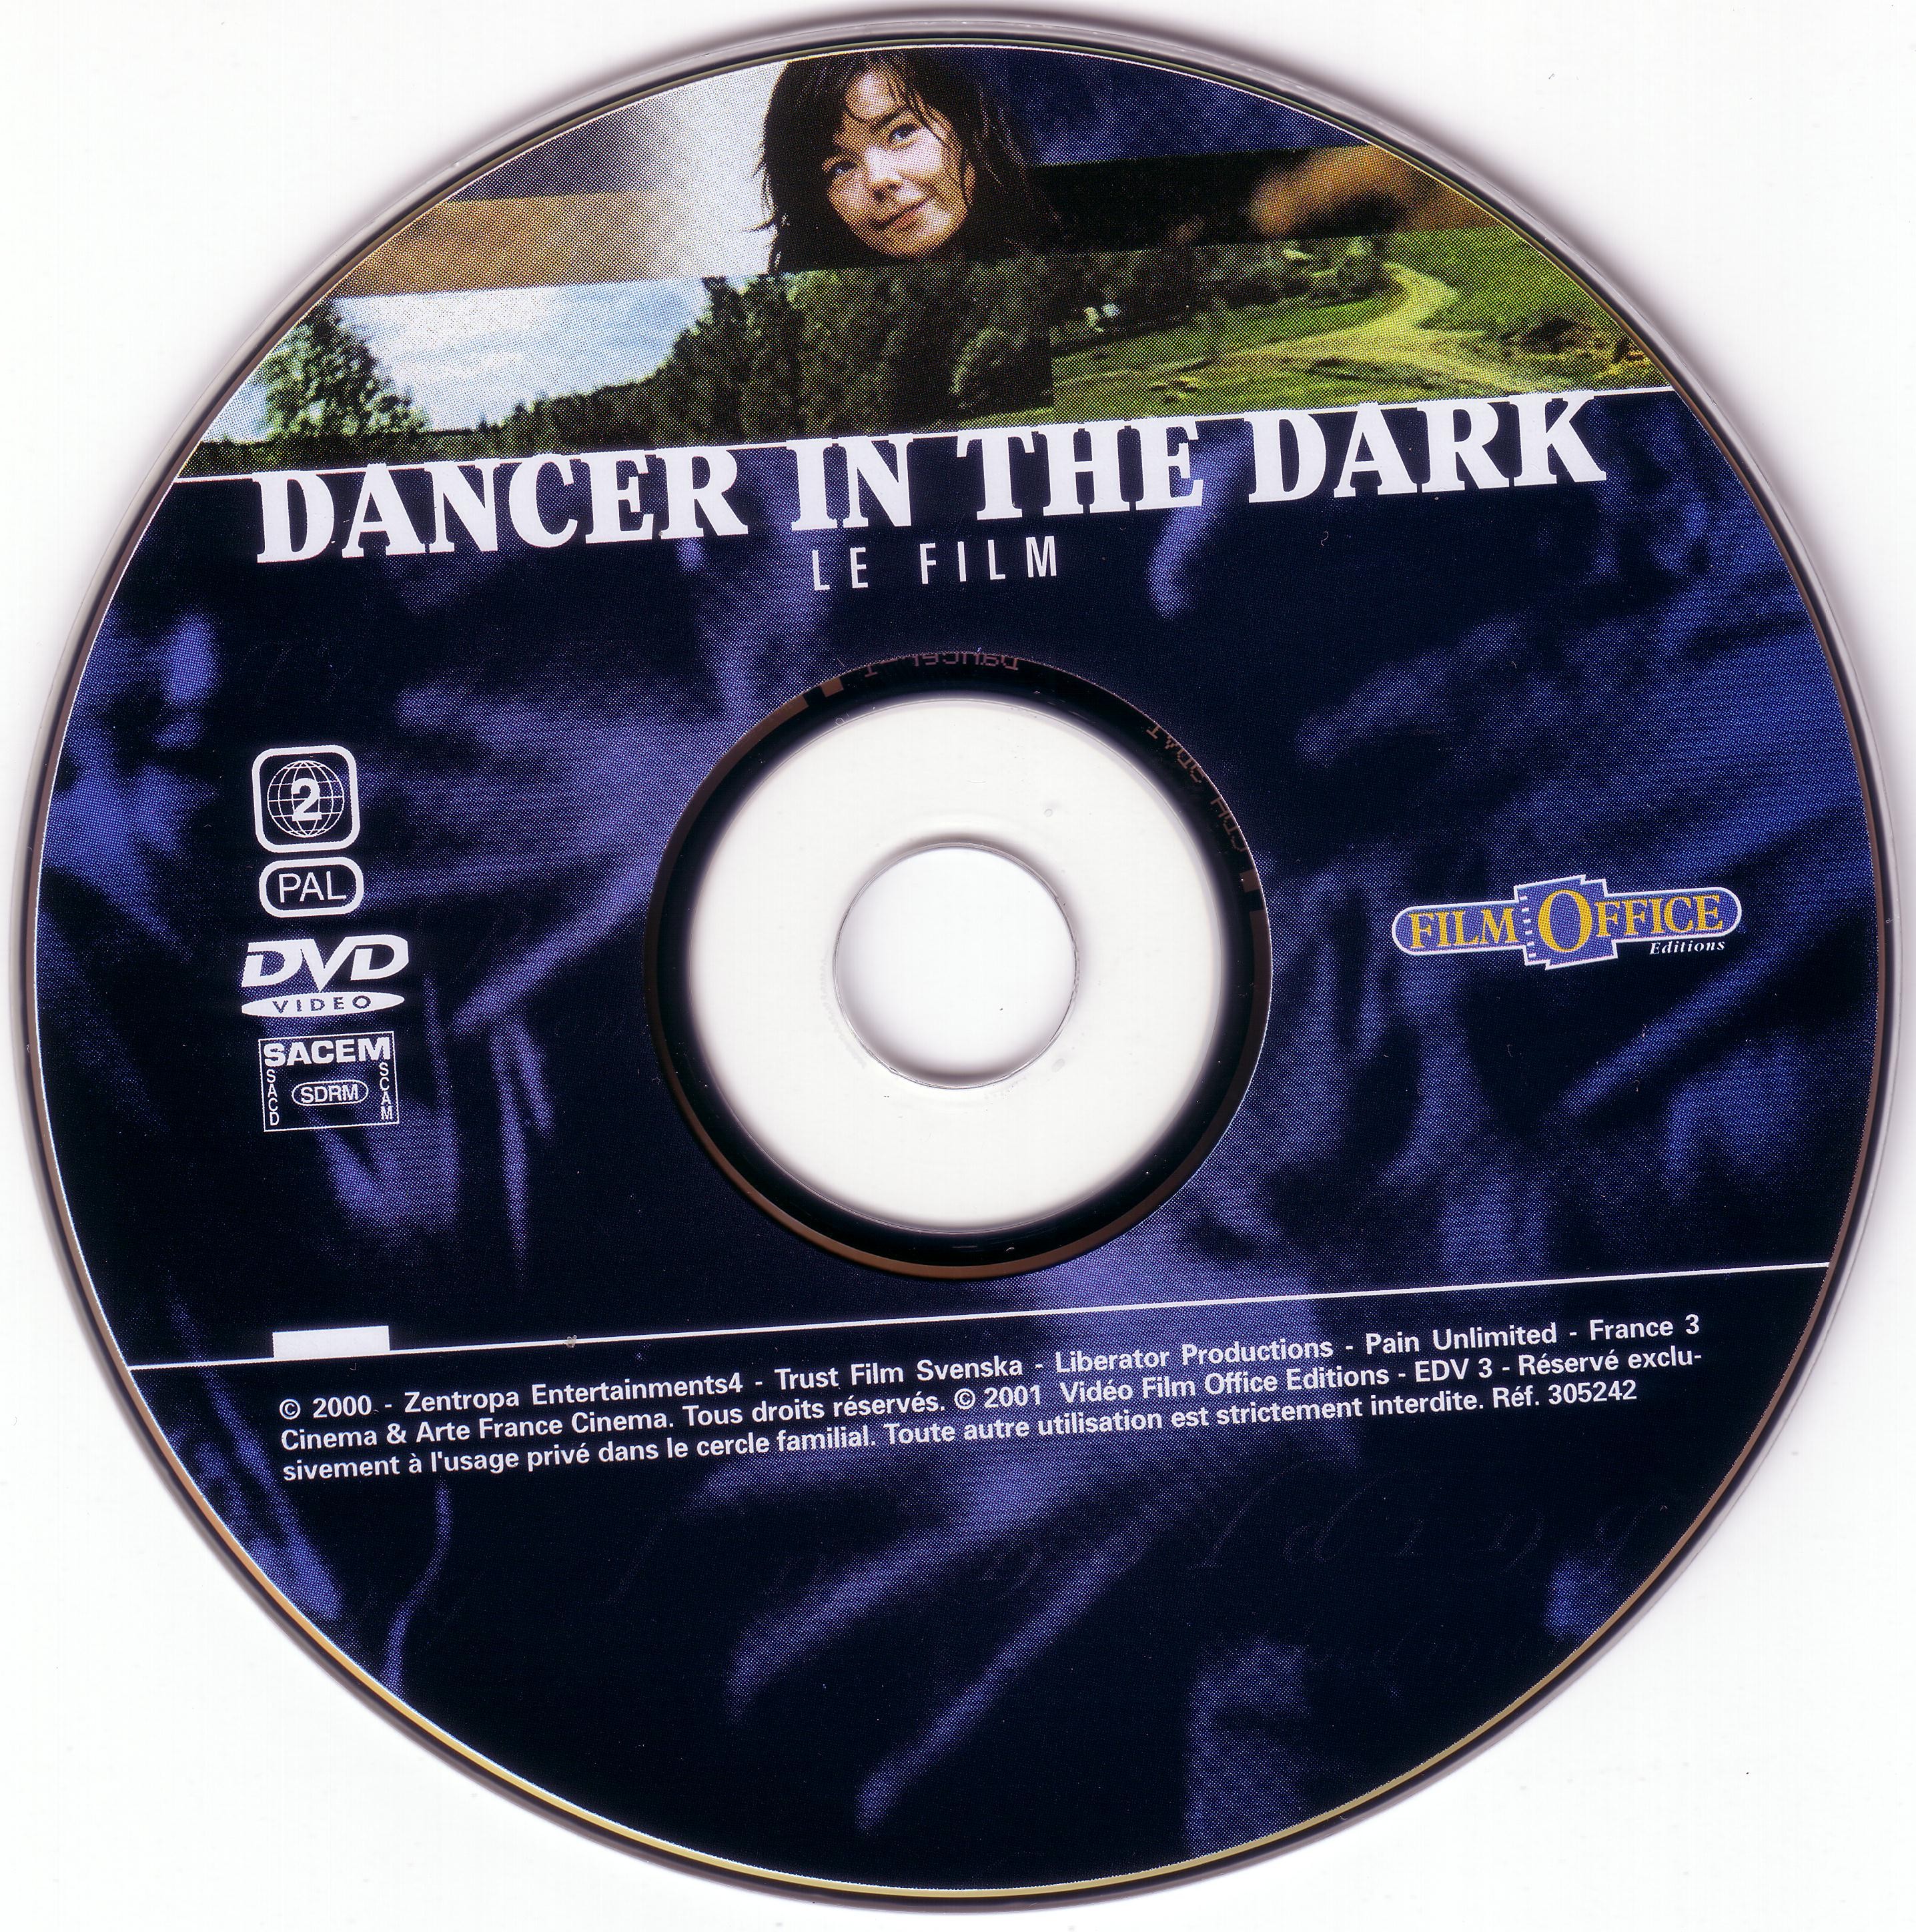 Dancer in the dark v2